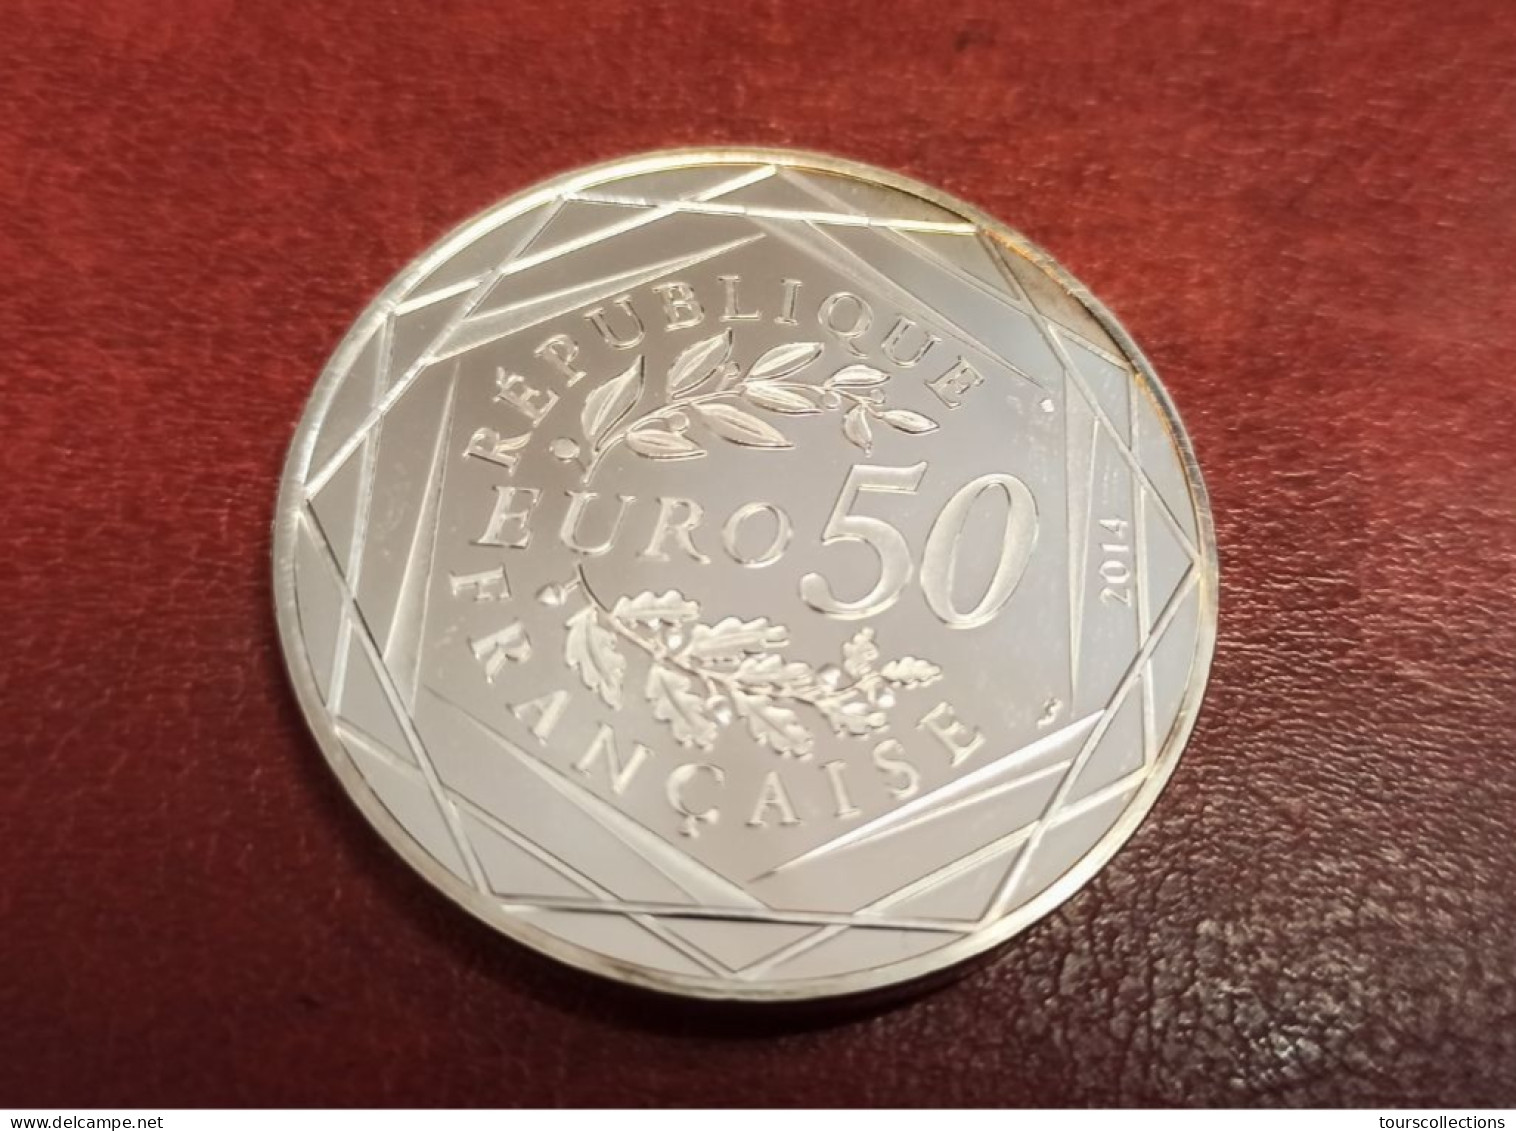 50 EUROS ARGENT FRANCE OISEAU PAIX Par Sempé - 41 Mm Pour 41 Grammes à 90% - MONNAIE DE PARIS 2014 Printemps / Eté - Frankreich